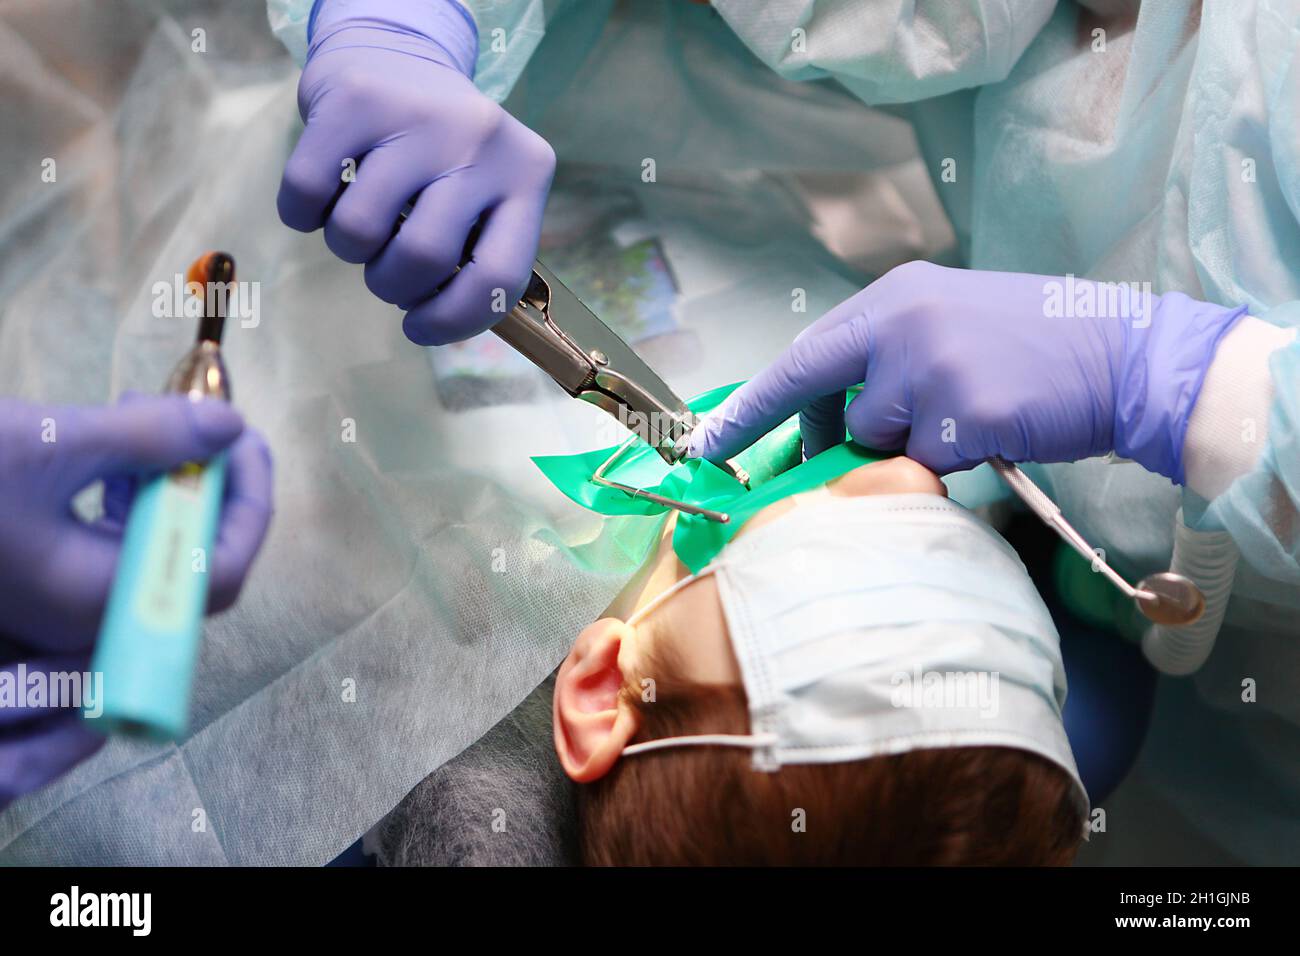 Chirurgia dentale. Un chirurgo dentale pediatrico esegue un'operazione per trattare le carie profonde in un bambino.concetto di salute e prevenzione.Copia spazio. Foto Stock